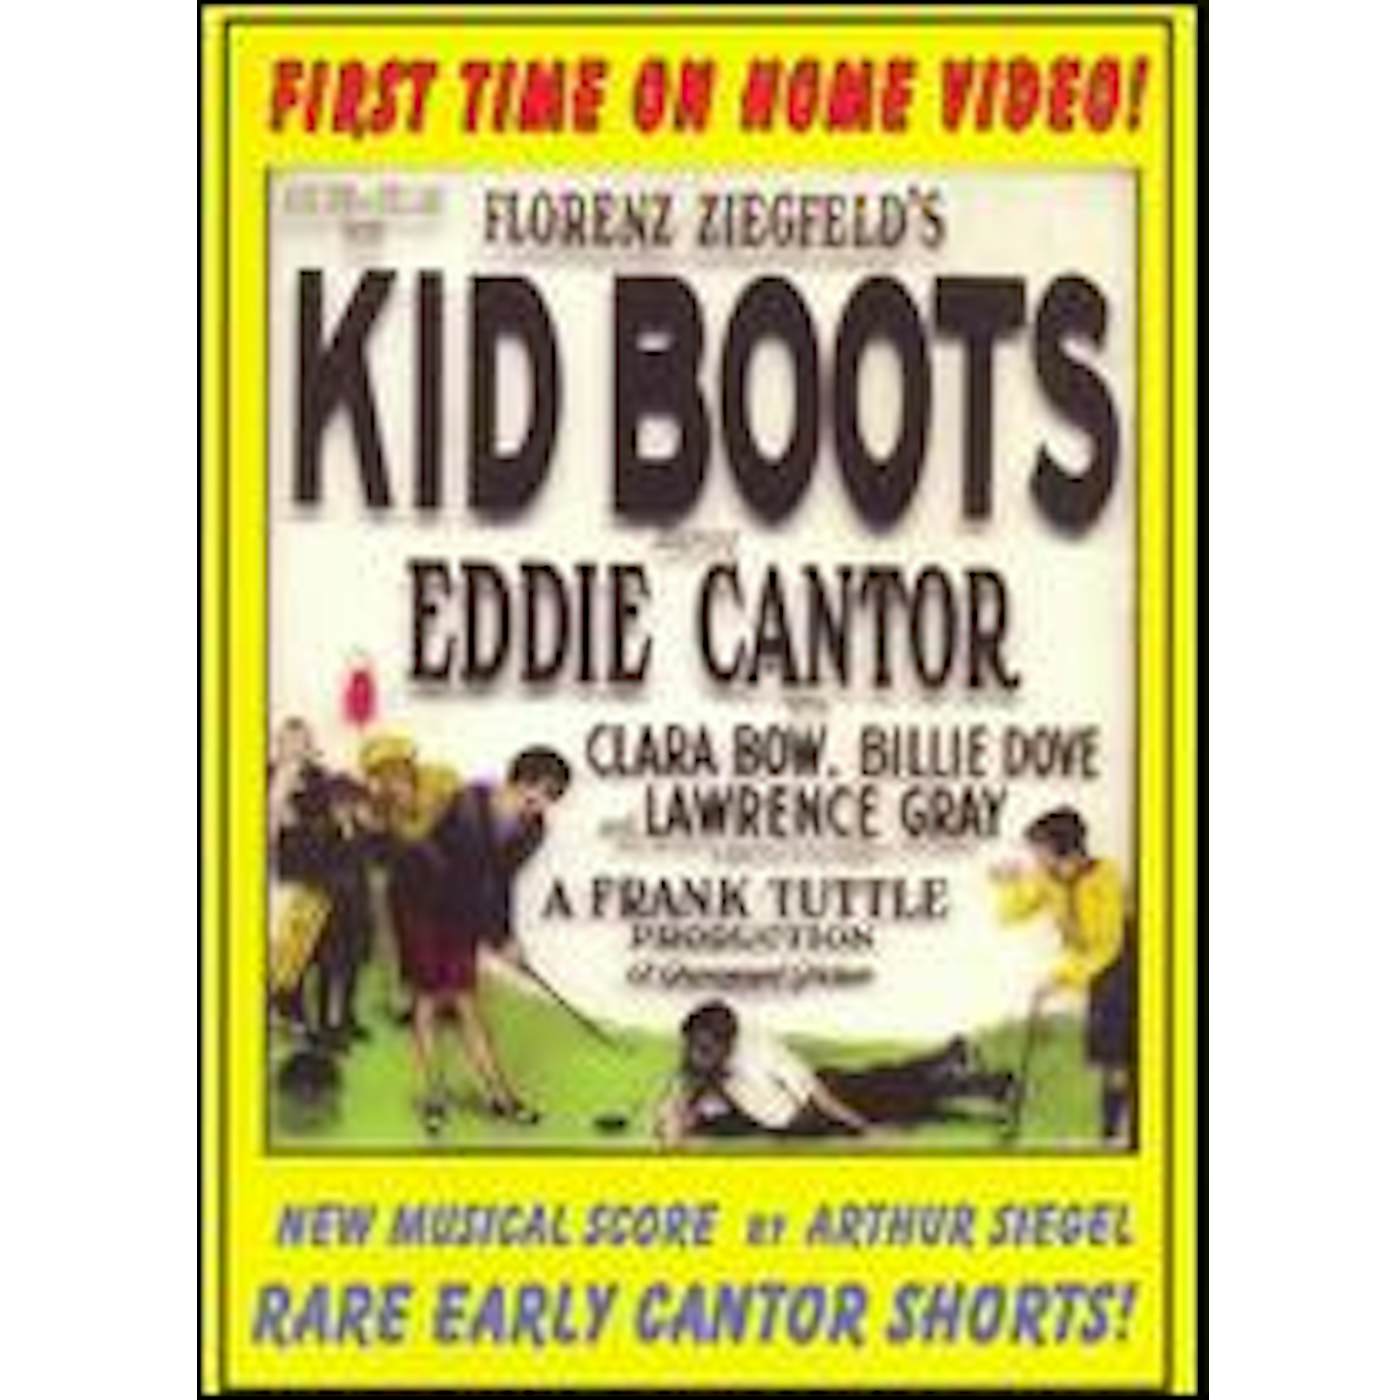 Eddie Cantor KID BOOTS DVD